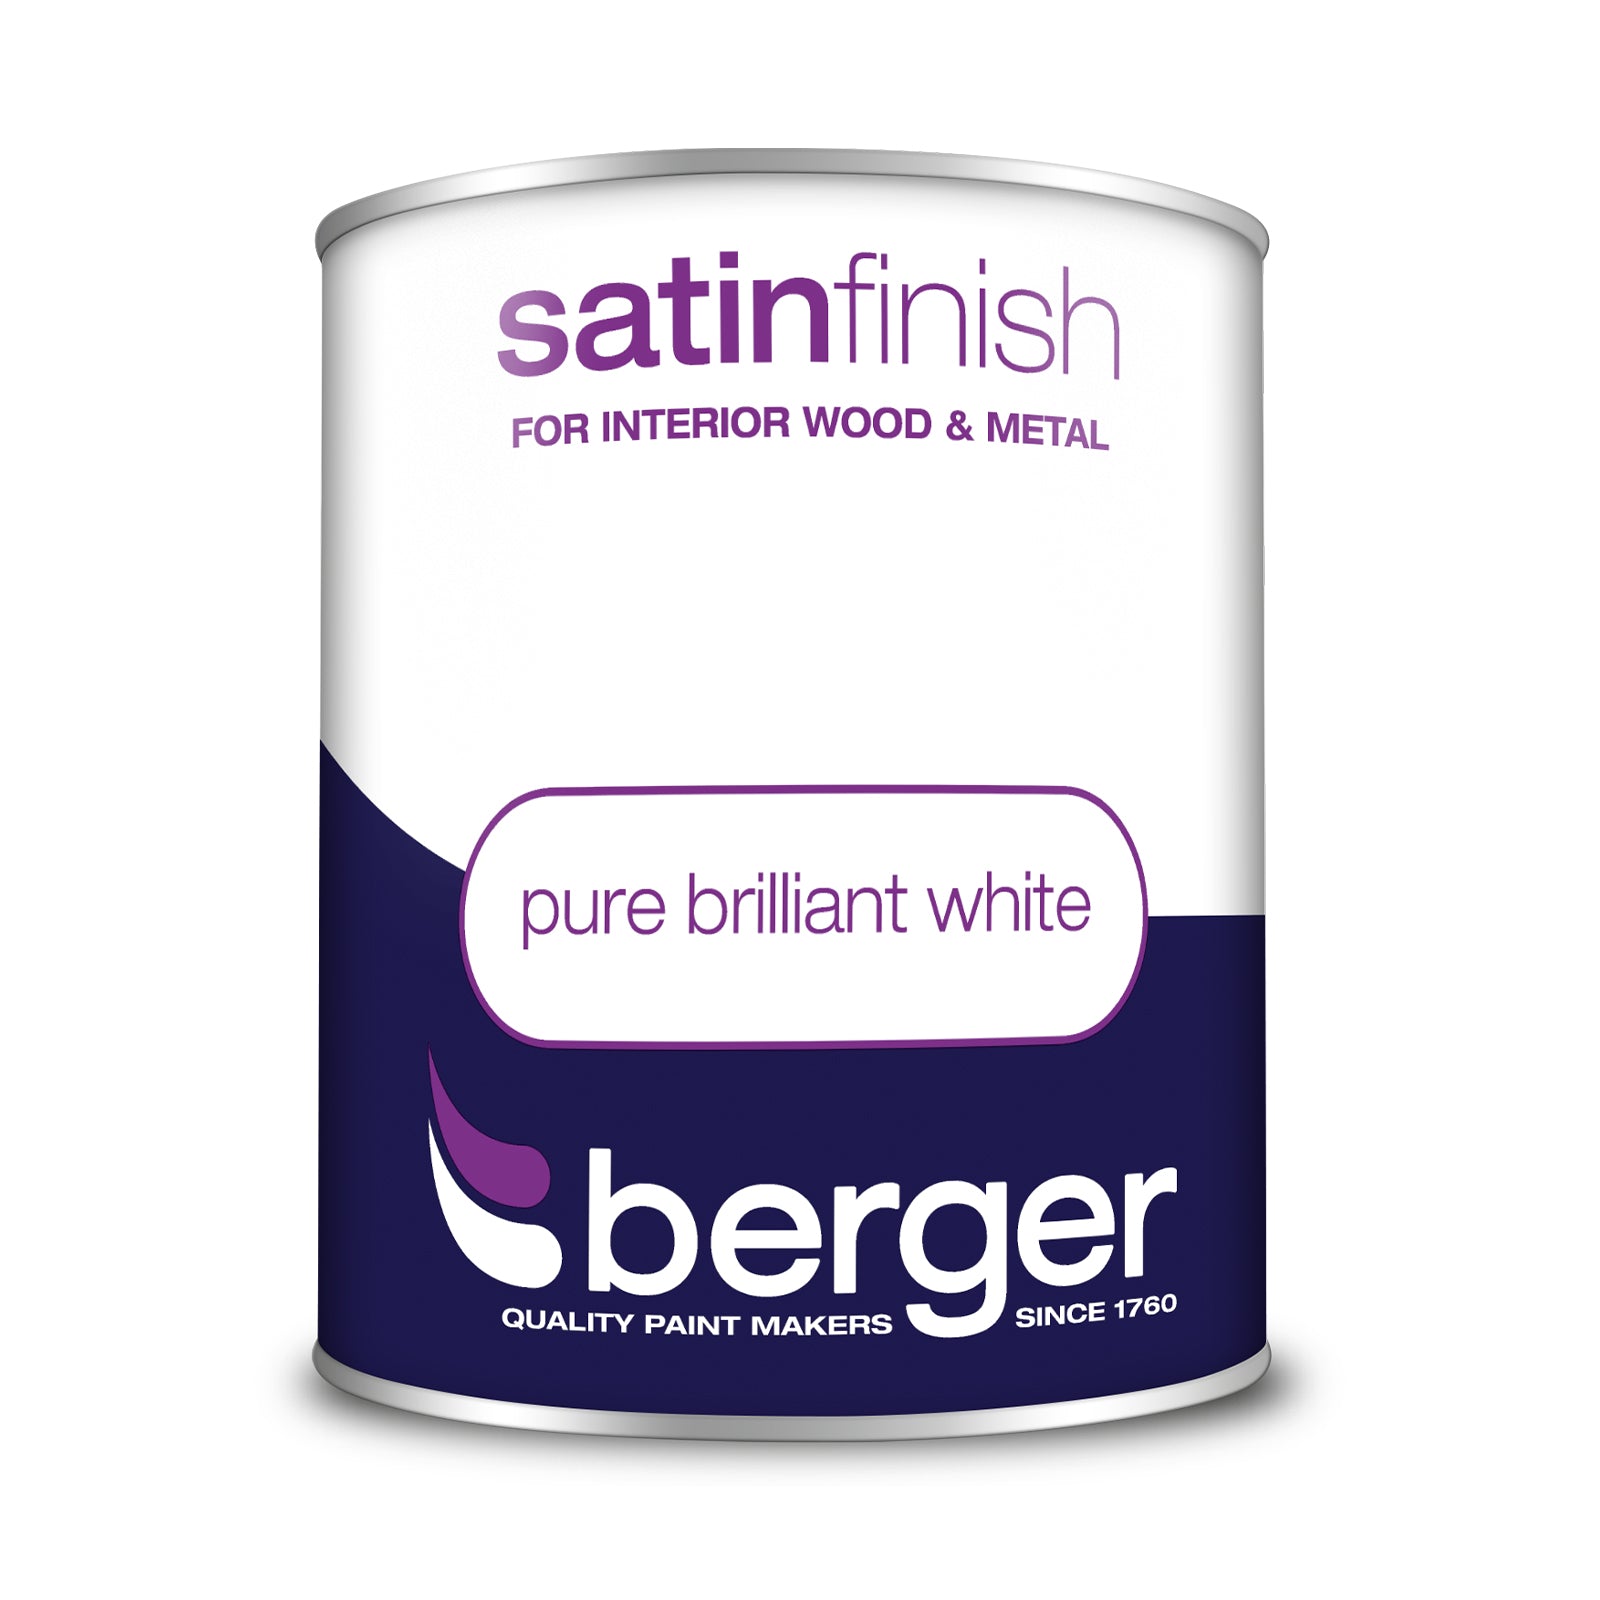 Berger Satin Pure Brilliant White 750ml